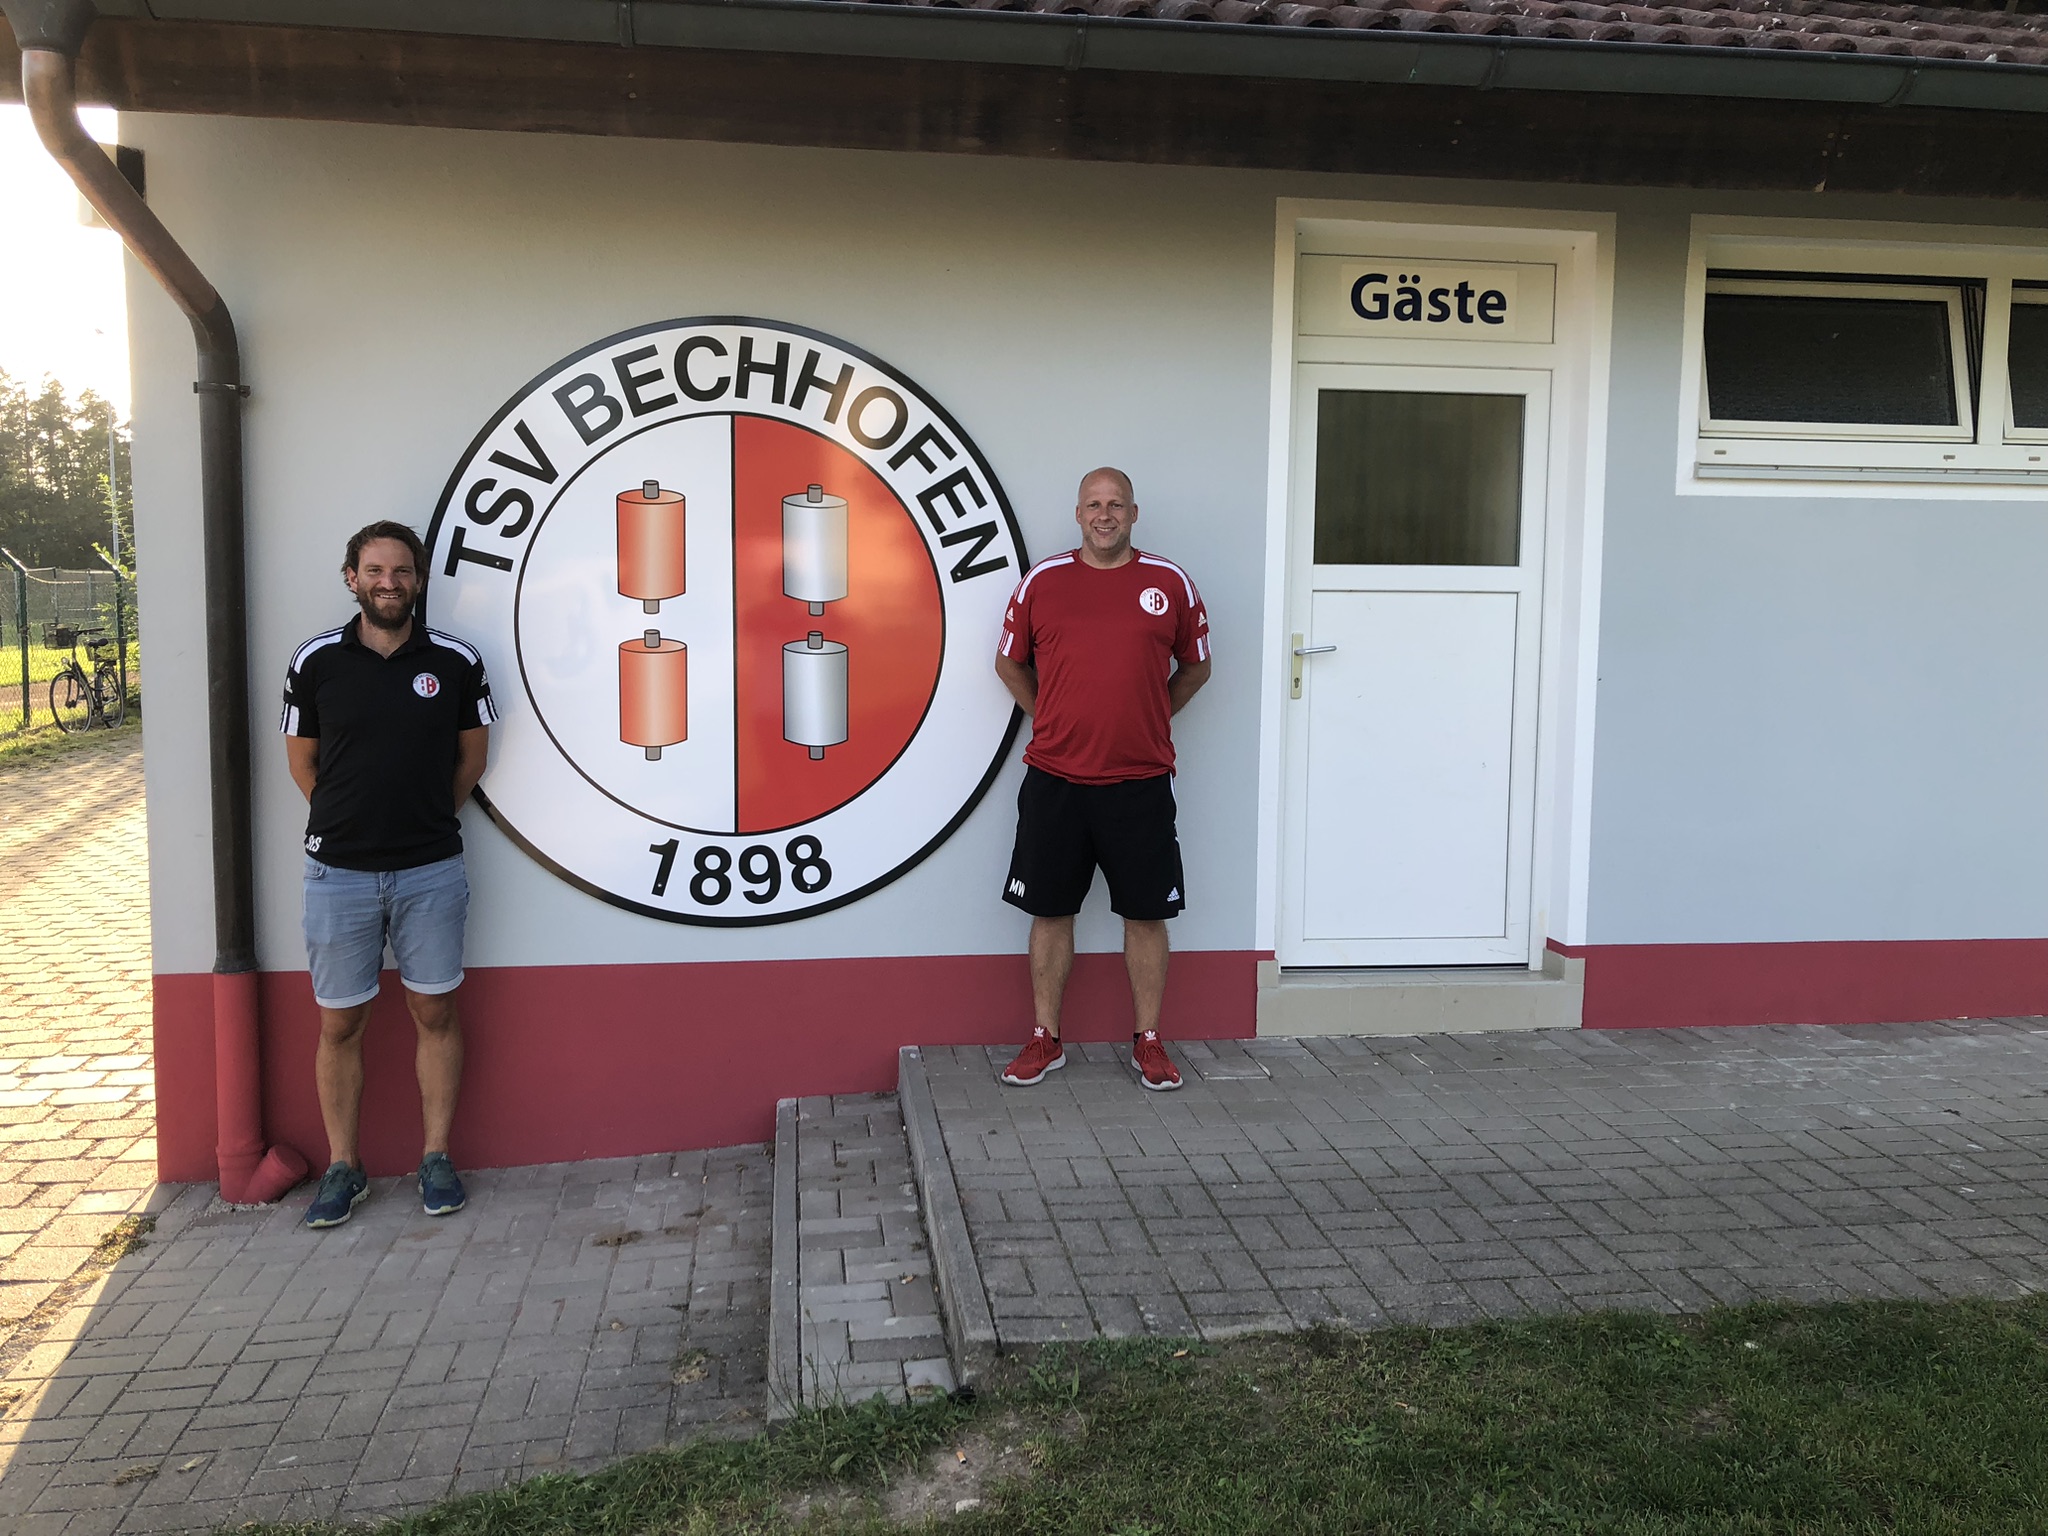  TSV Bechhofen Sportheim 